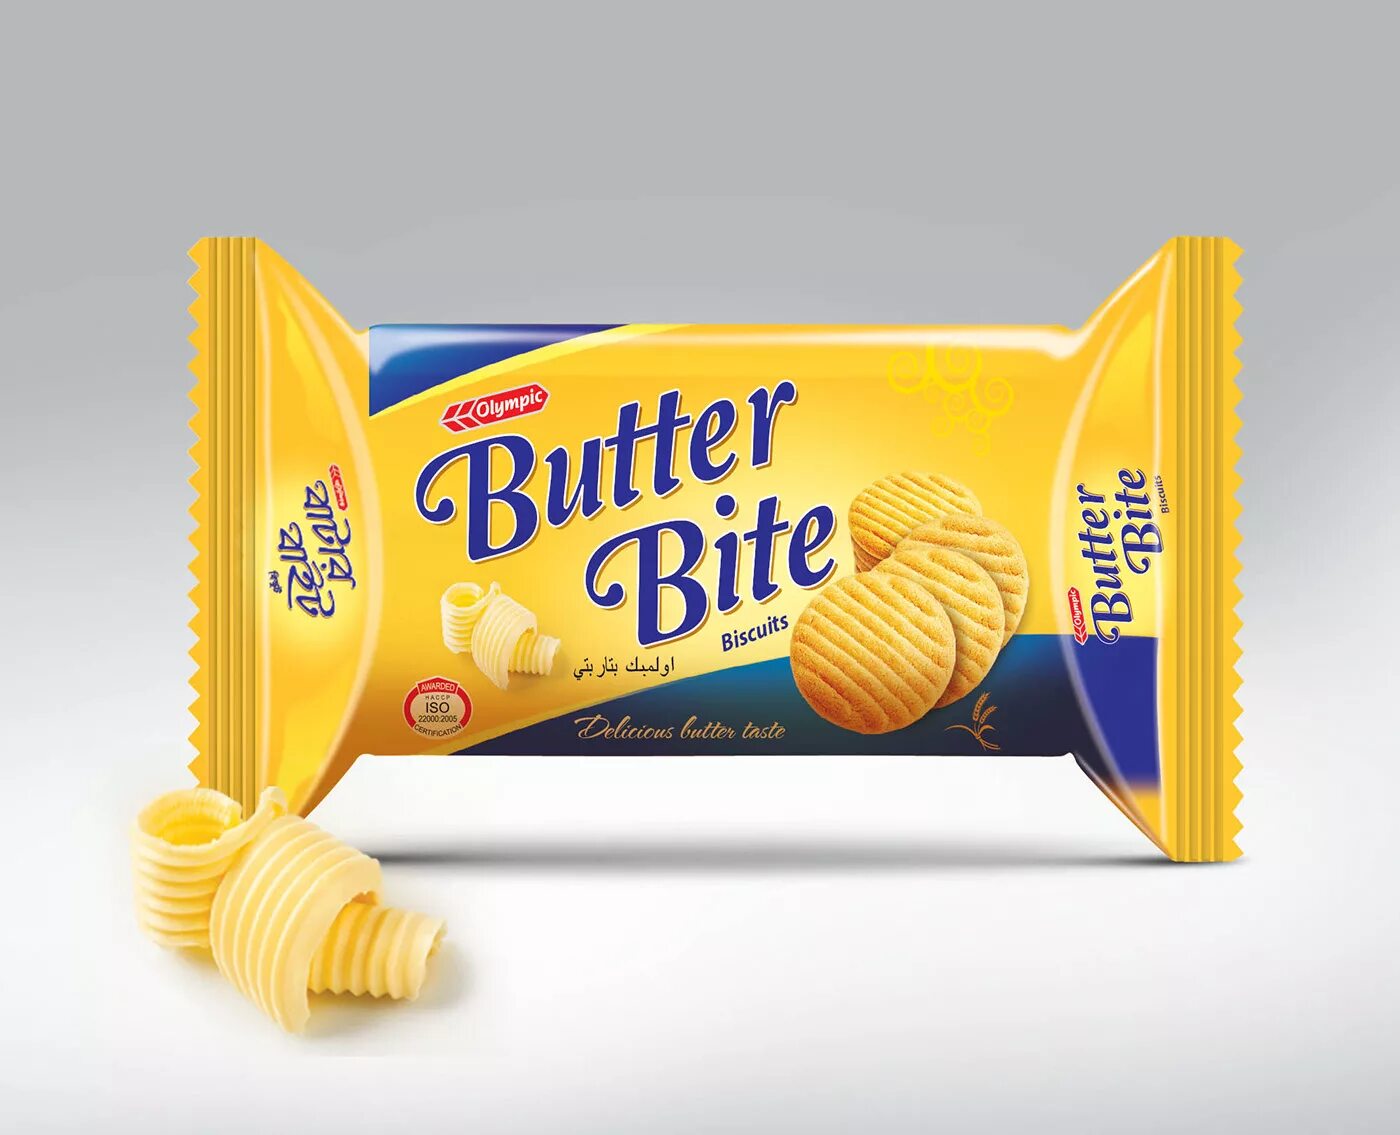 Печенье в упаковке. Дизайн упаковки печенья. Печенье Butter. Bite печенье упаковка. Butter roll cookie